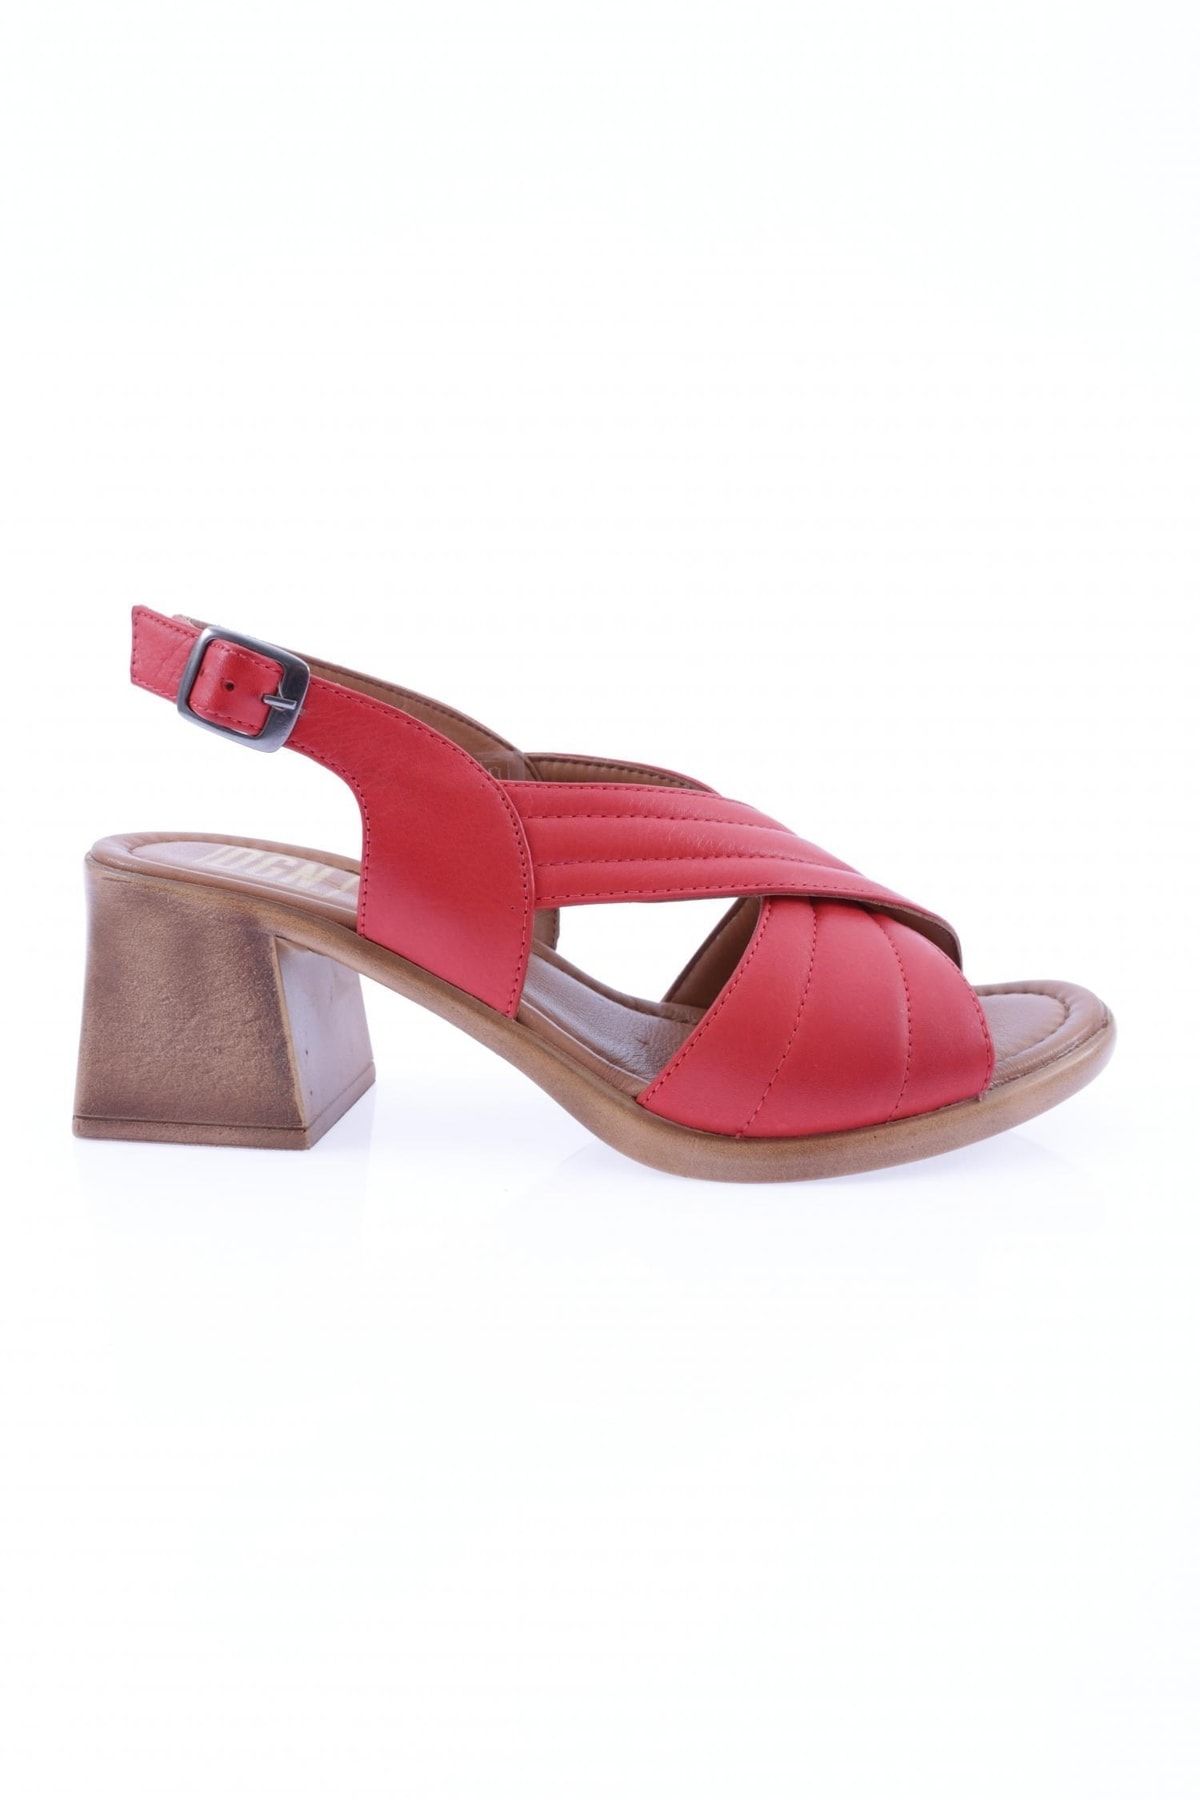 Dgn 12003-22y Kadın Çapraz Bant Kısa Topuklu Sandalet Hakiki Deri Kırmızı